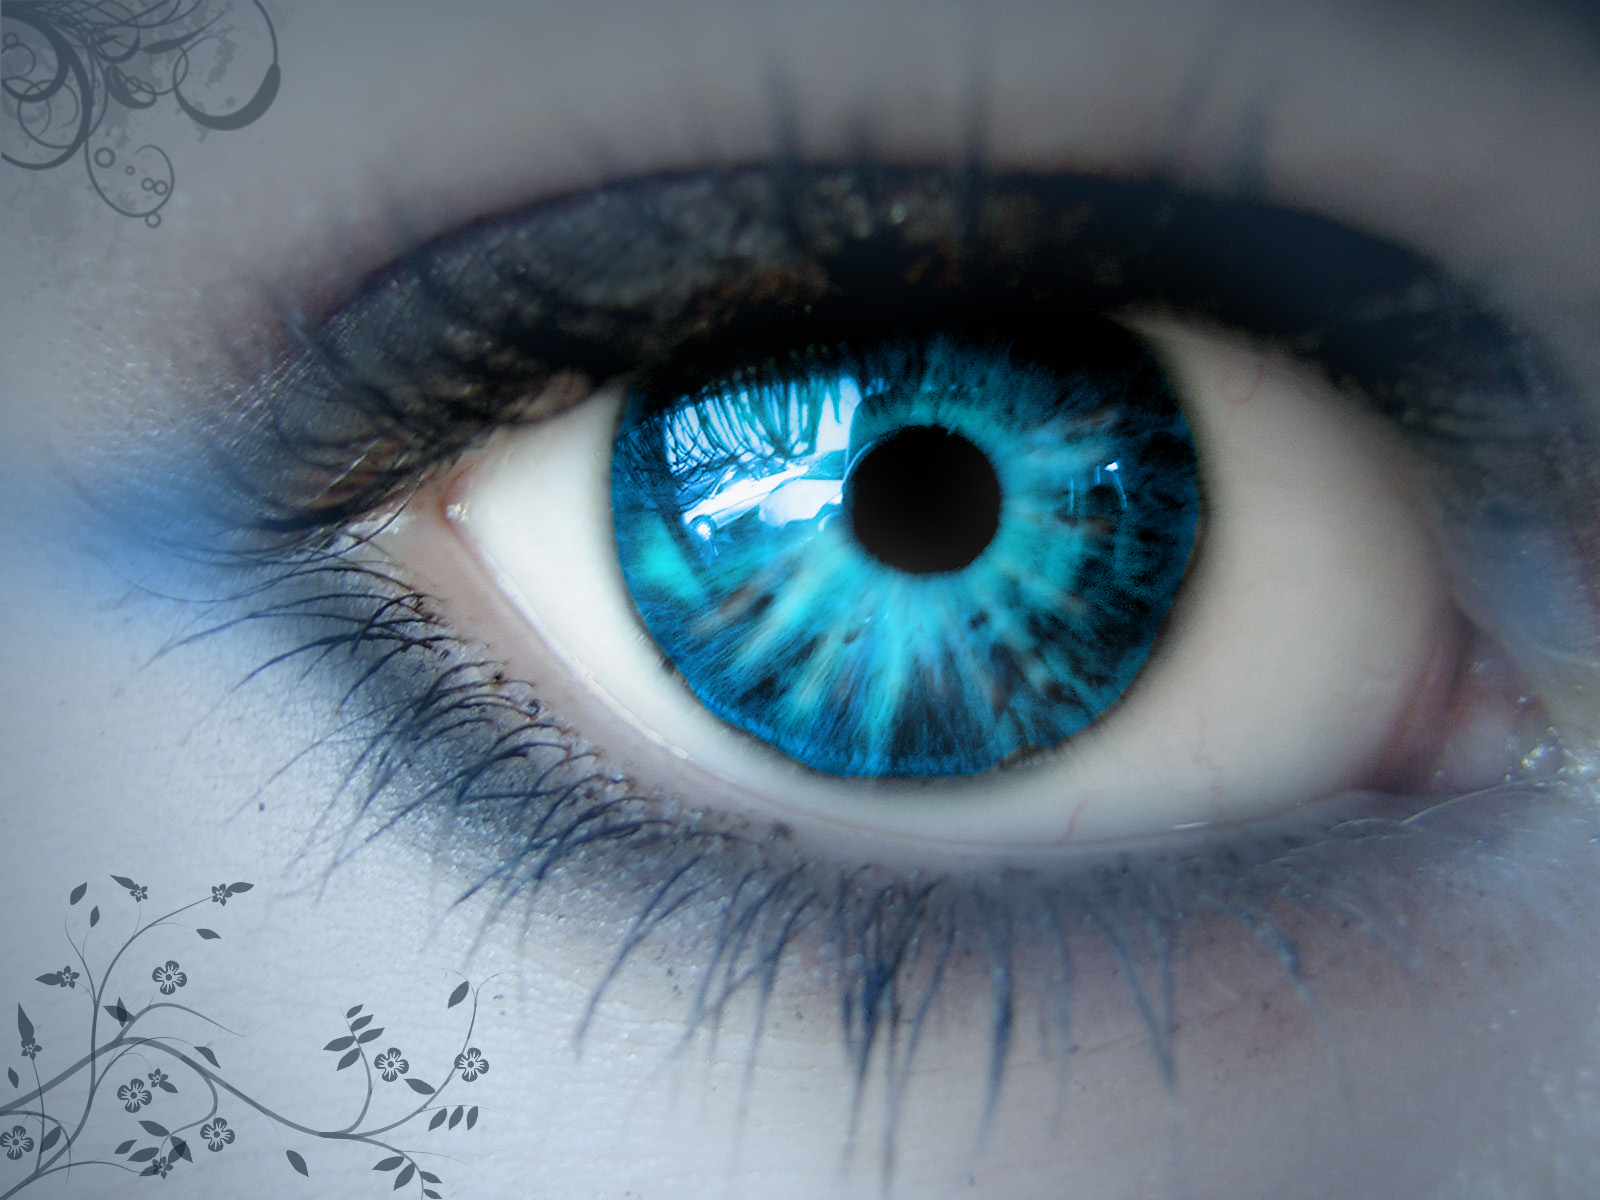 The Blue Eye | Creepypasta Wiki | FANDOM powered by Wikia